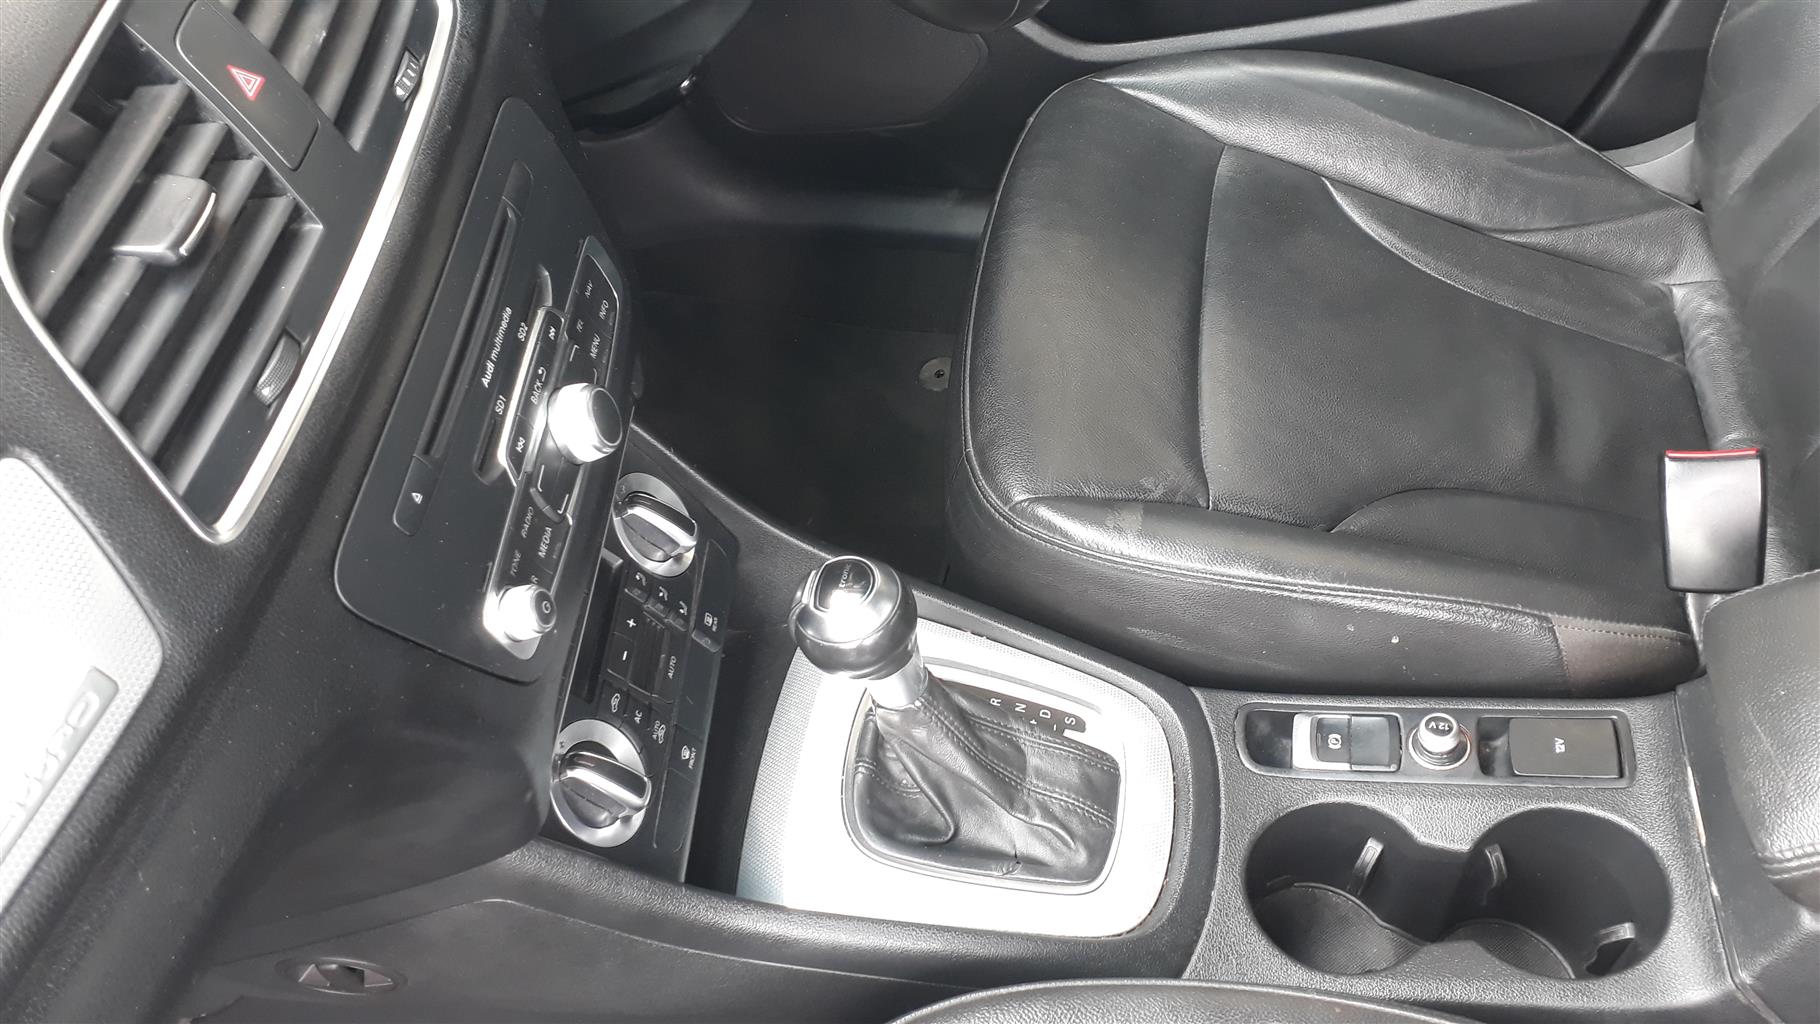 2013 Audi Q3 2.0T 8Speed Quattro Automatic SUV